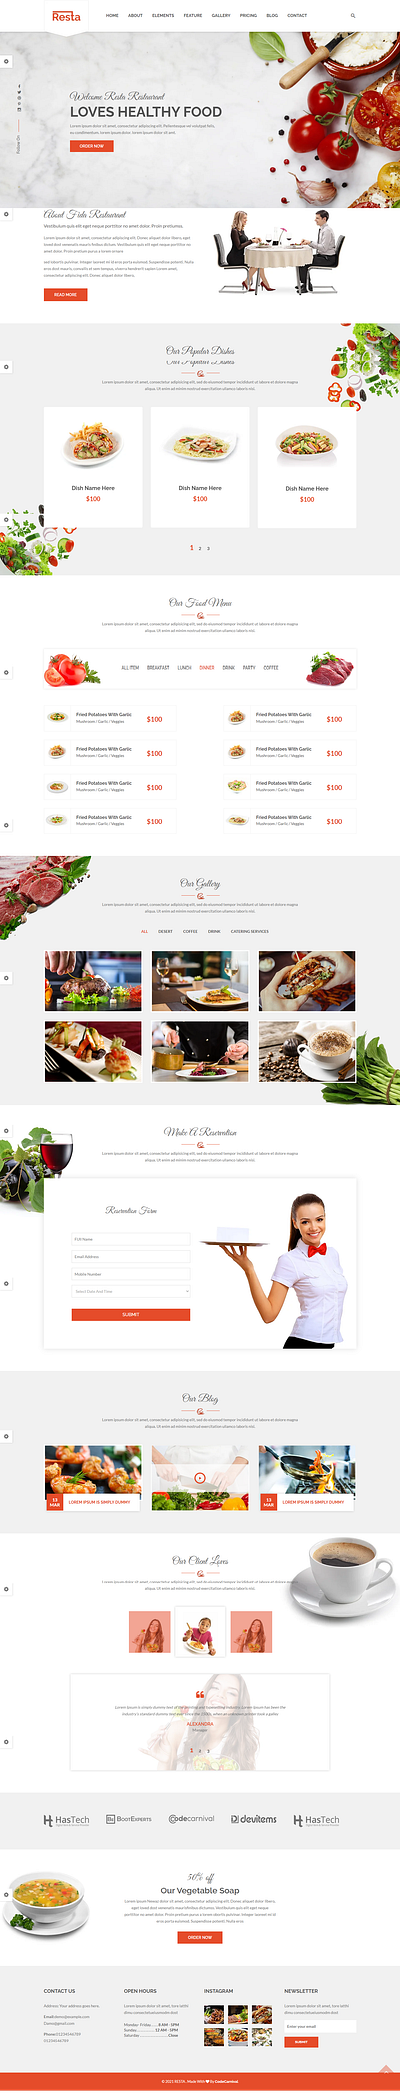 Food Website UI Design ui